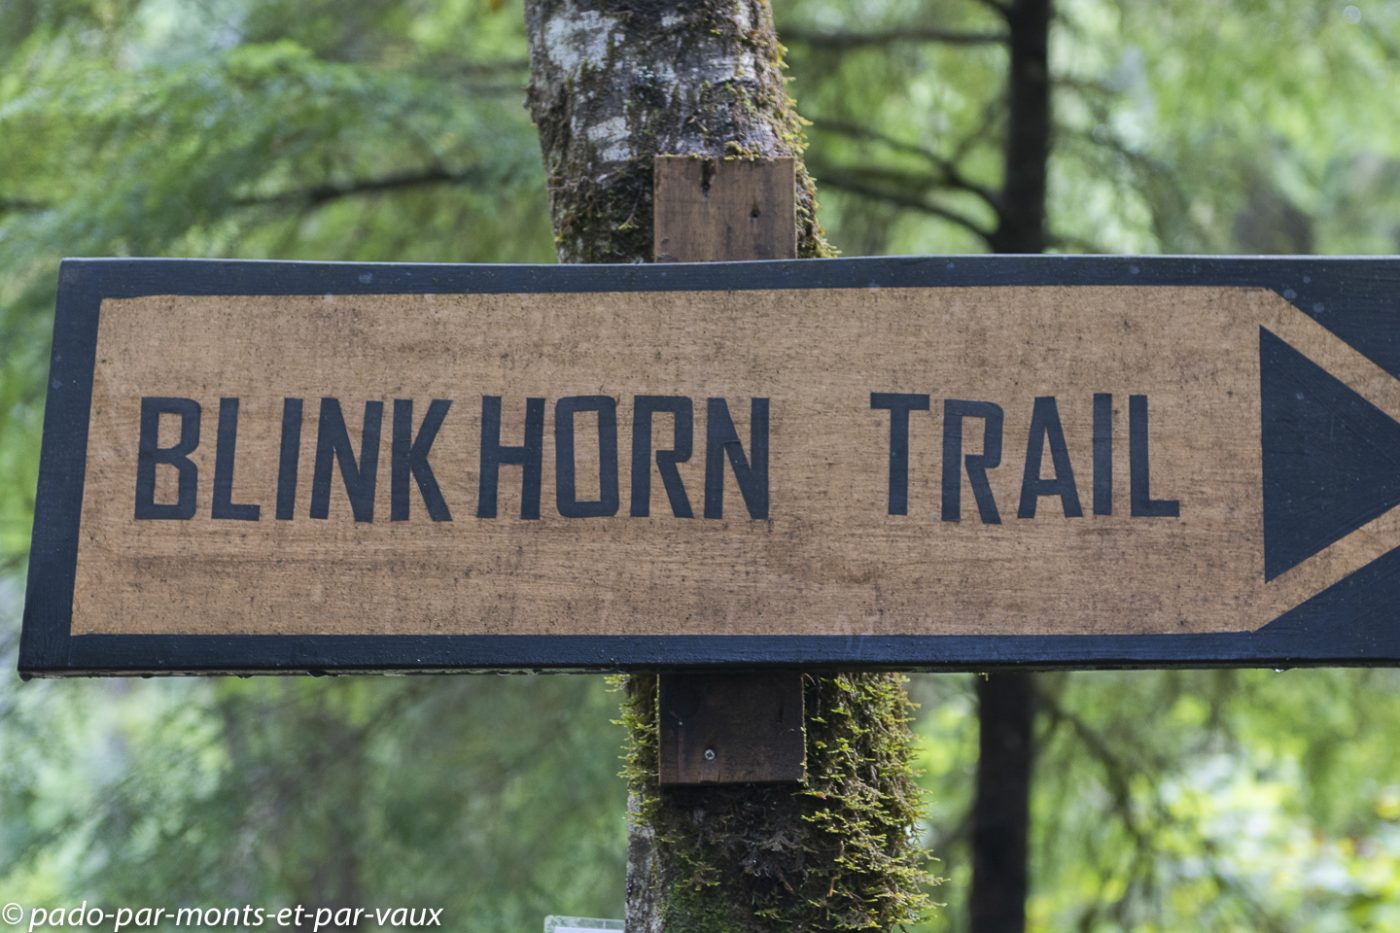 Telegraph Cove - Blink Horn Trail